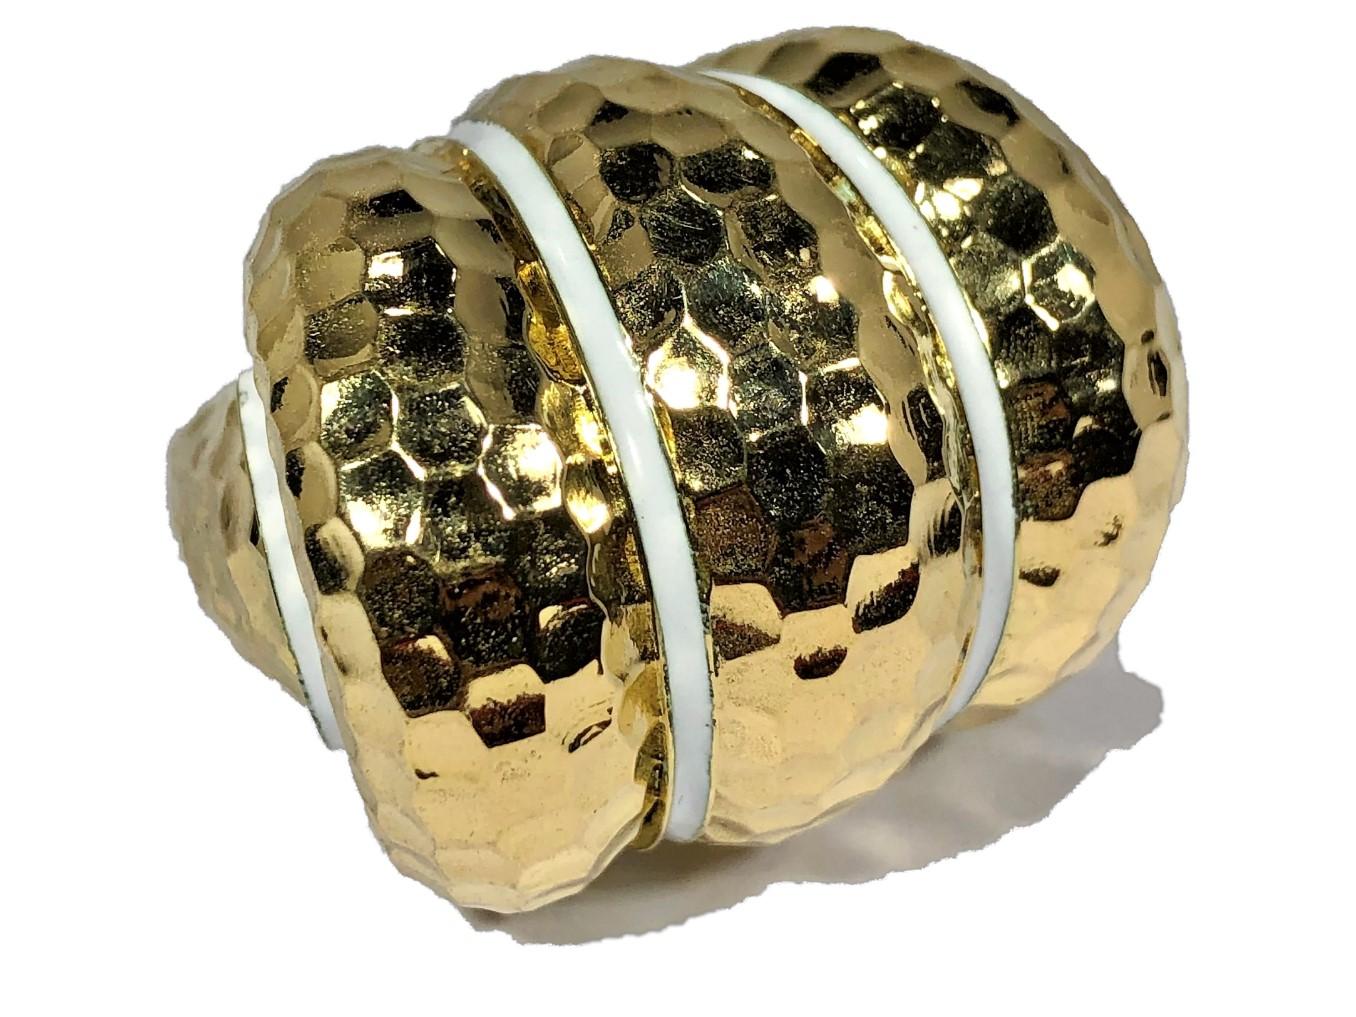 Dieser große, klobige, dreiteilige Bombee-Ring in gehämmerter Ausführung ist aus 18 Karat Gelbgold gefertigt und hat vier dezente Linien aus weißer Emaille, die den Designbereich sowie die Schultern abgrenzen. Obwohl sie erst kürzlich hergestellt